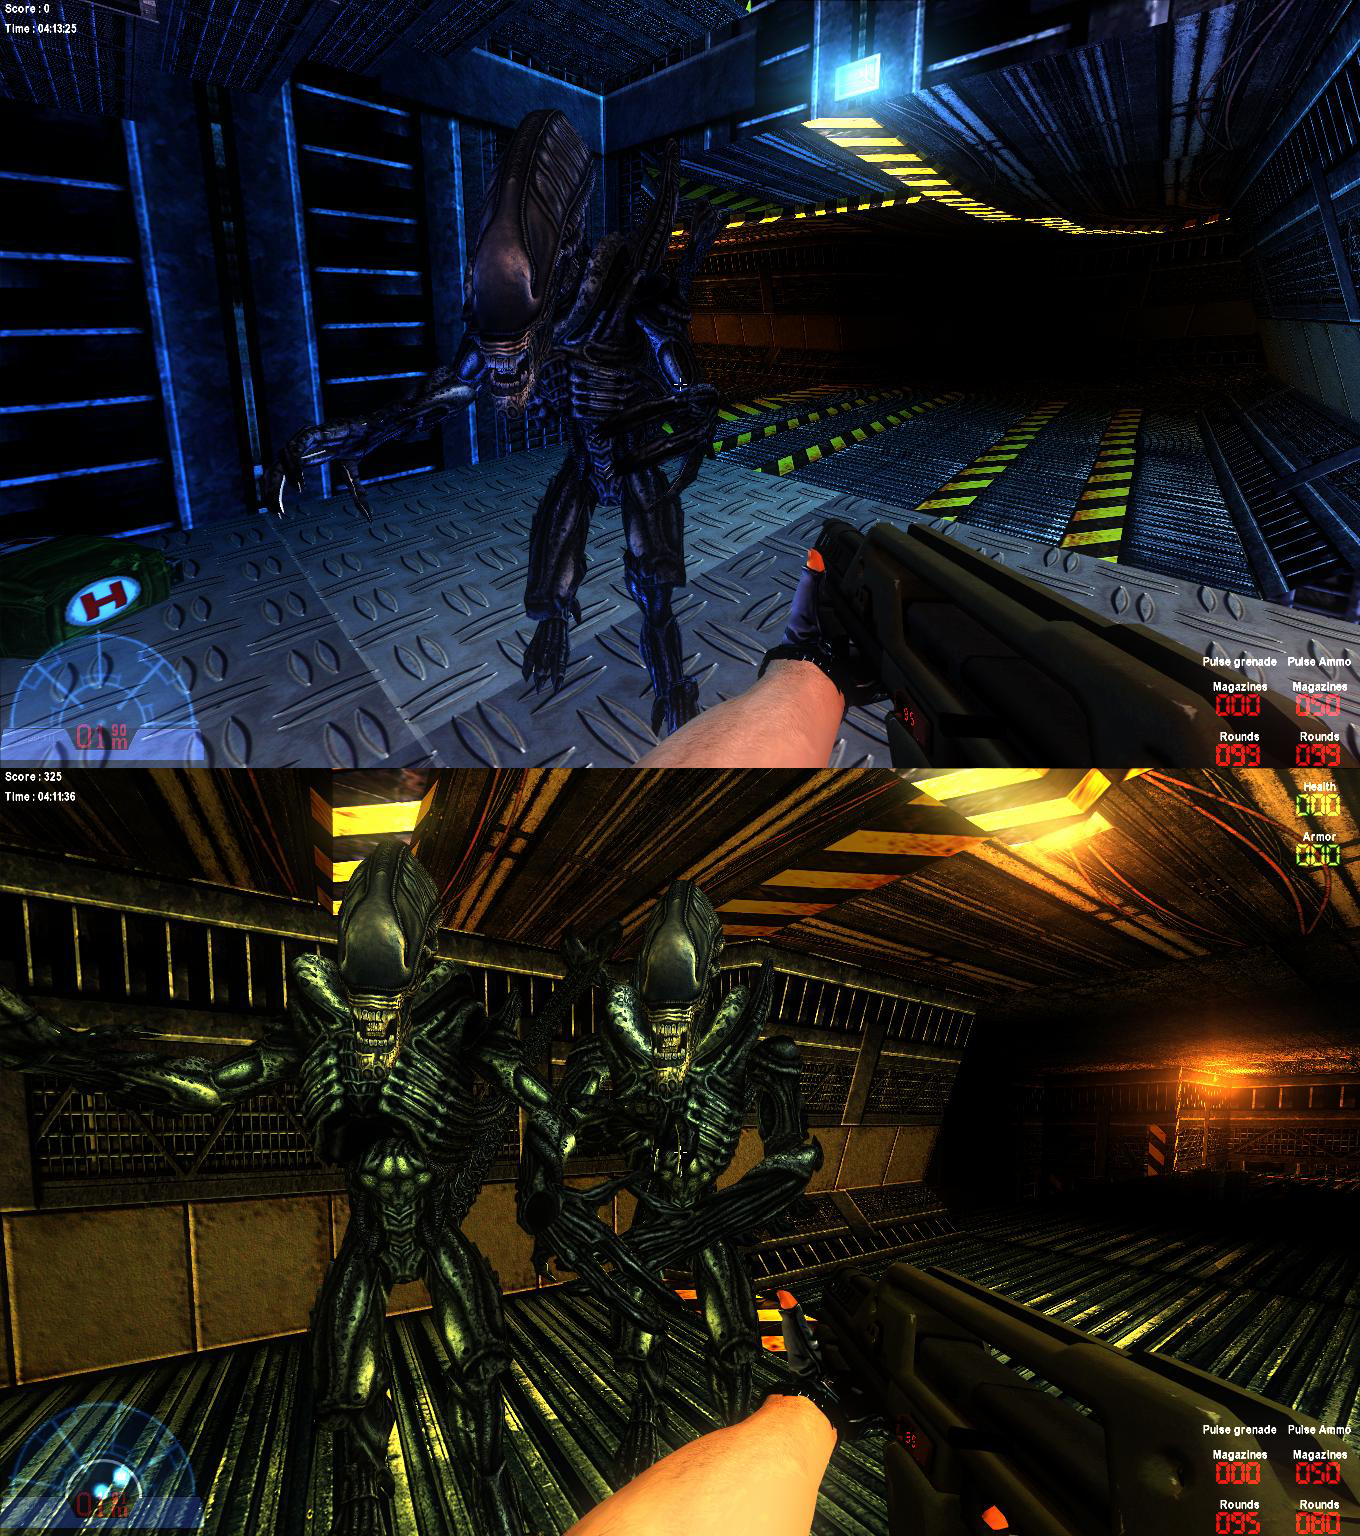 Aliens vs Predator 2005. Aliens versus Predator 2 2001. AVP 2010 андроиды. Alien vs Predator игра 1999. Андроид игра чужой хищник